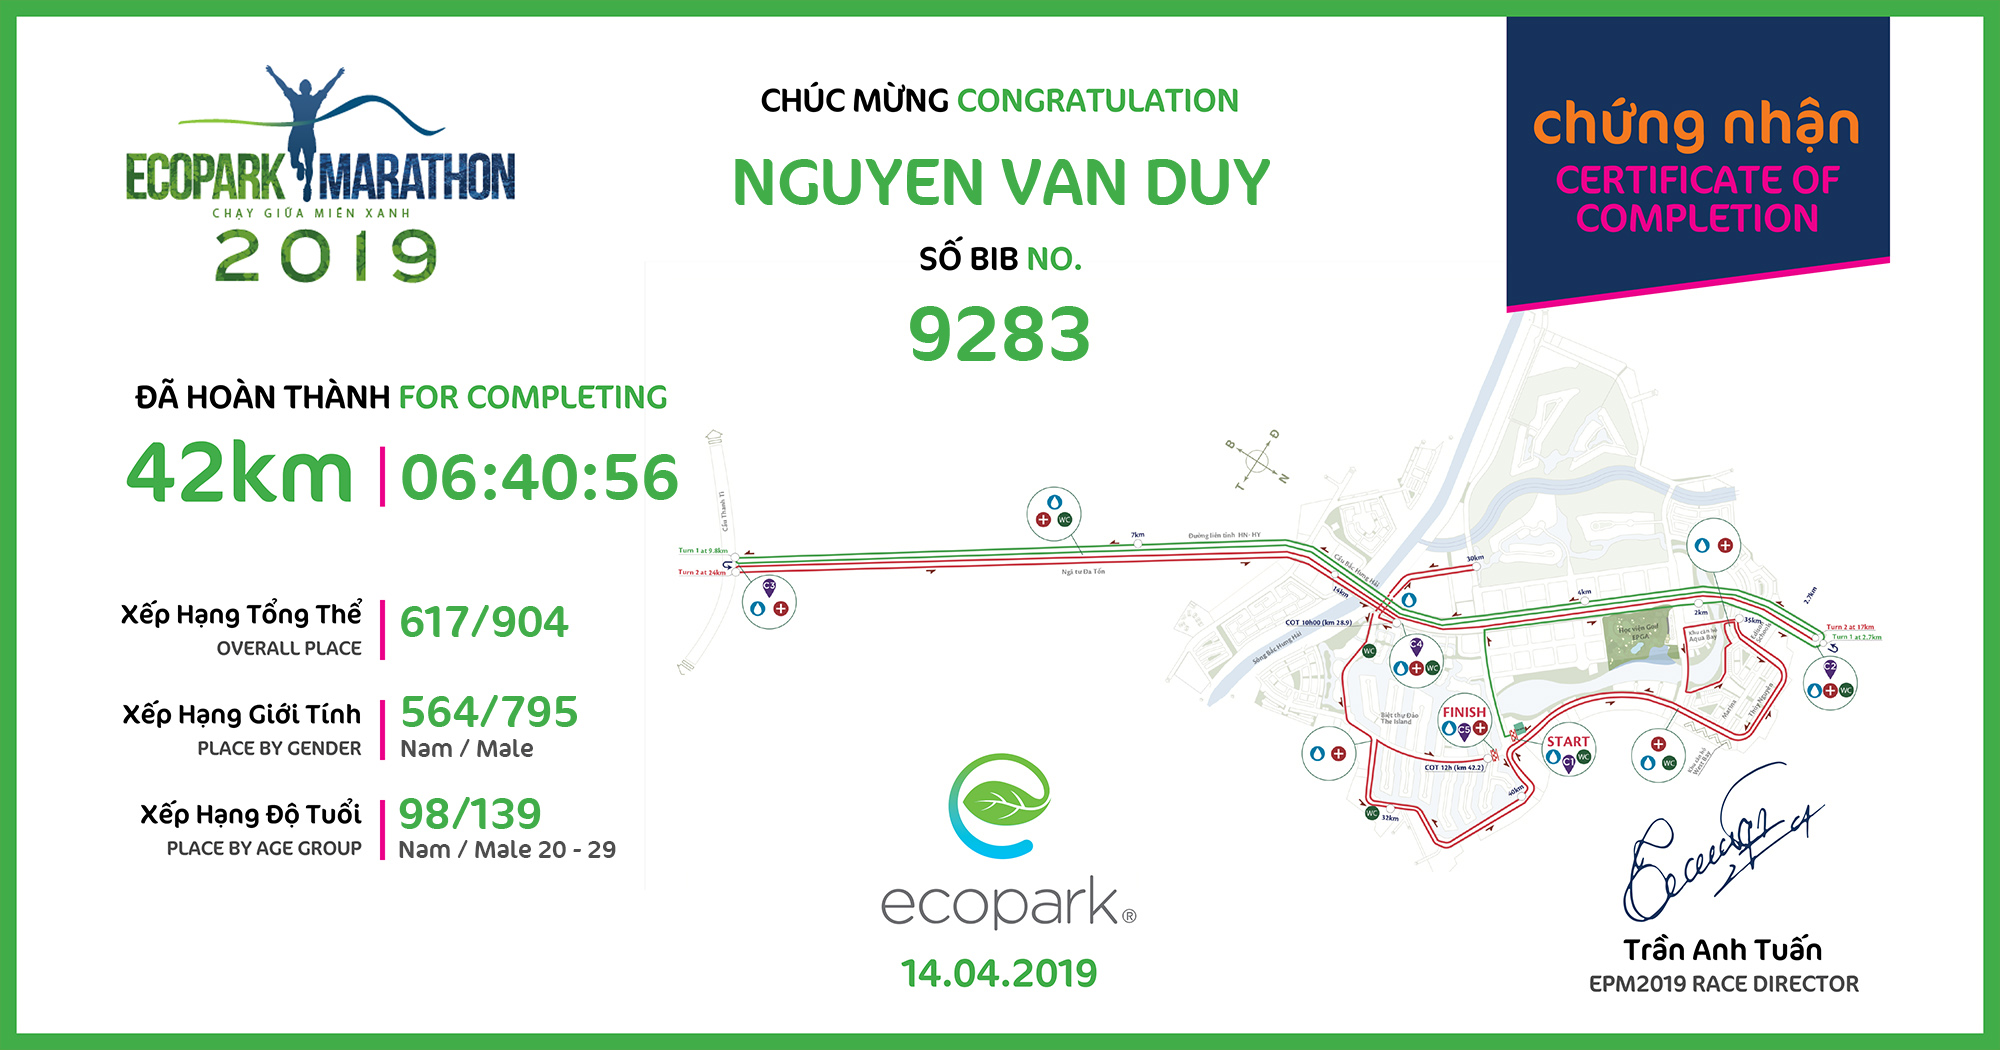 9283 - Nguyen Van Duy